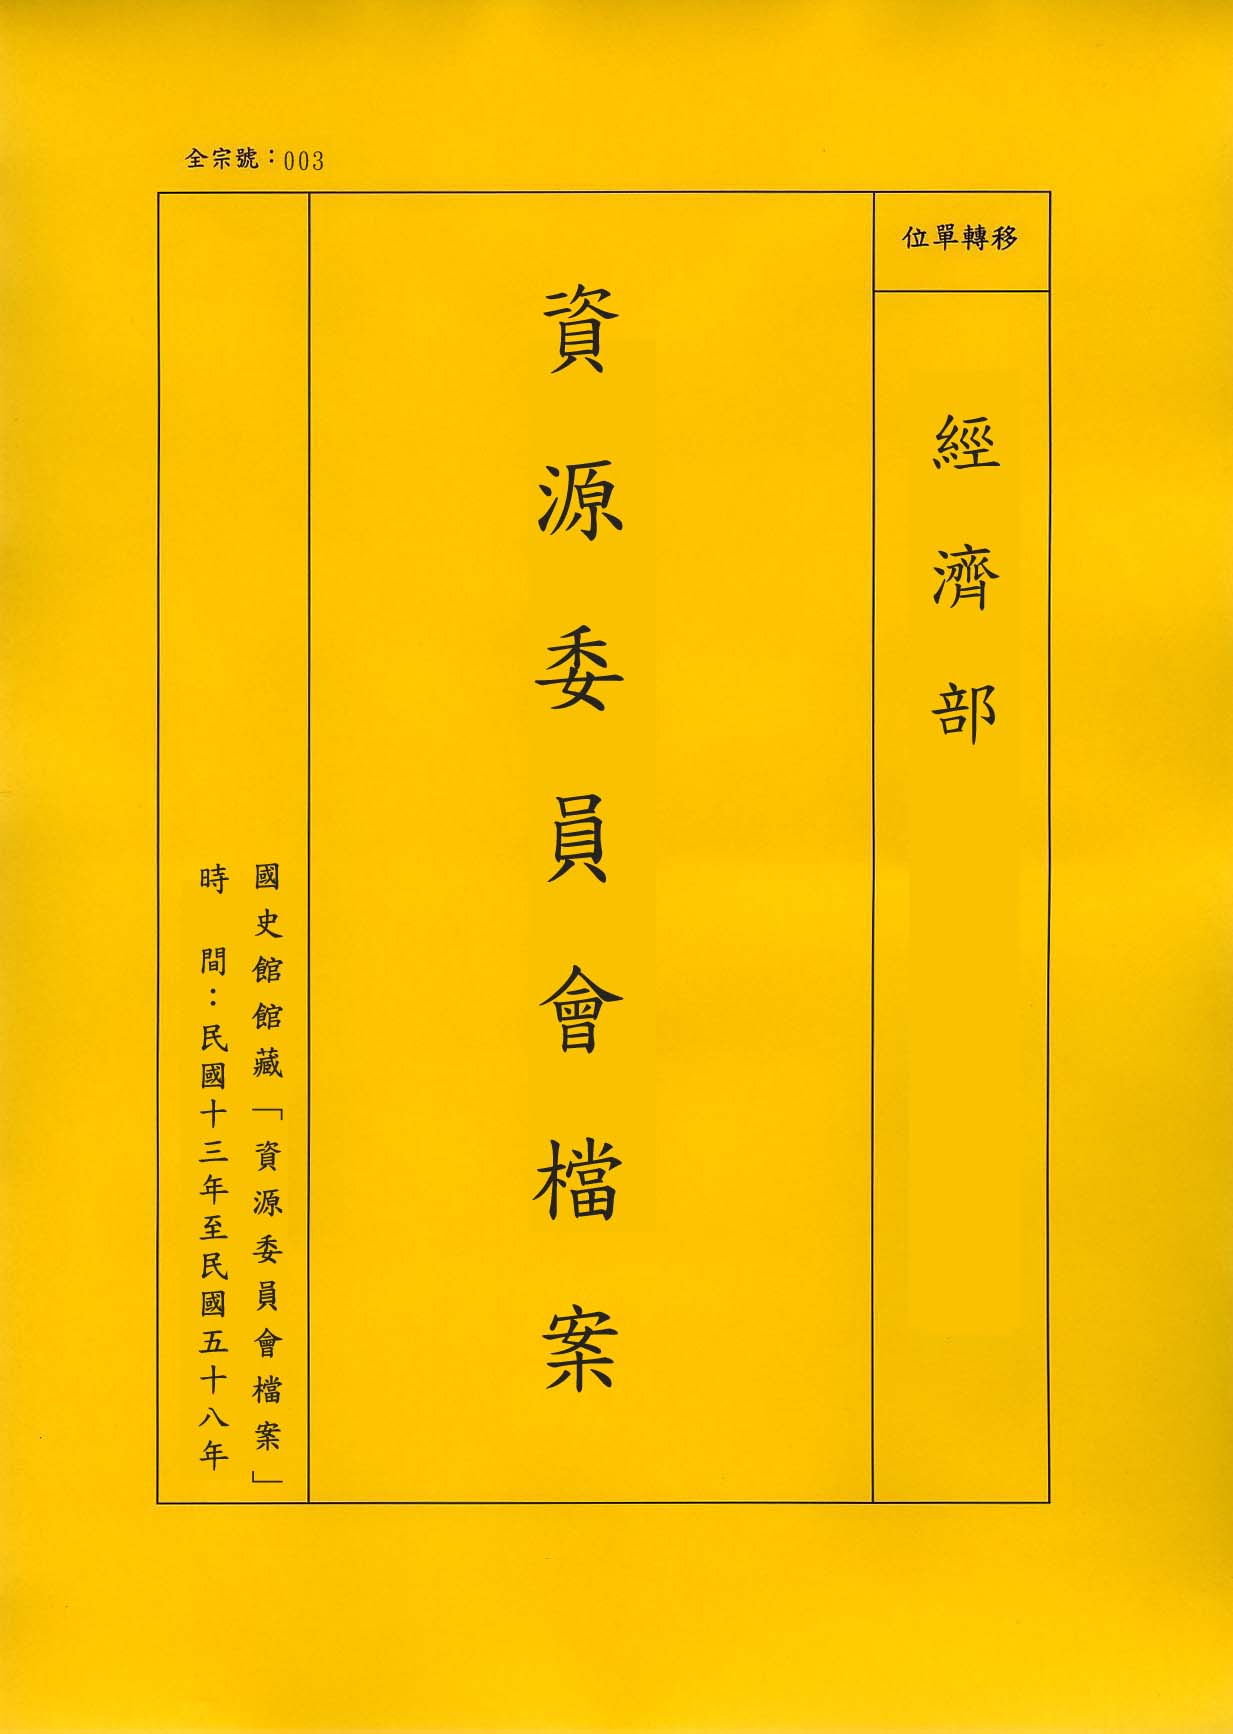 卷名:橡膠工廠調查表─廣州(003-010306-0161)